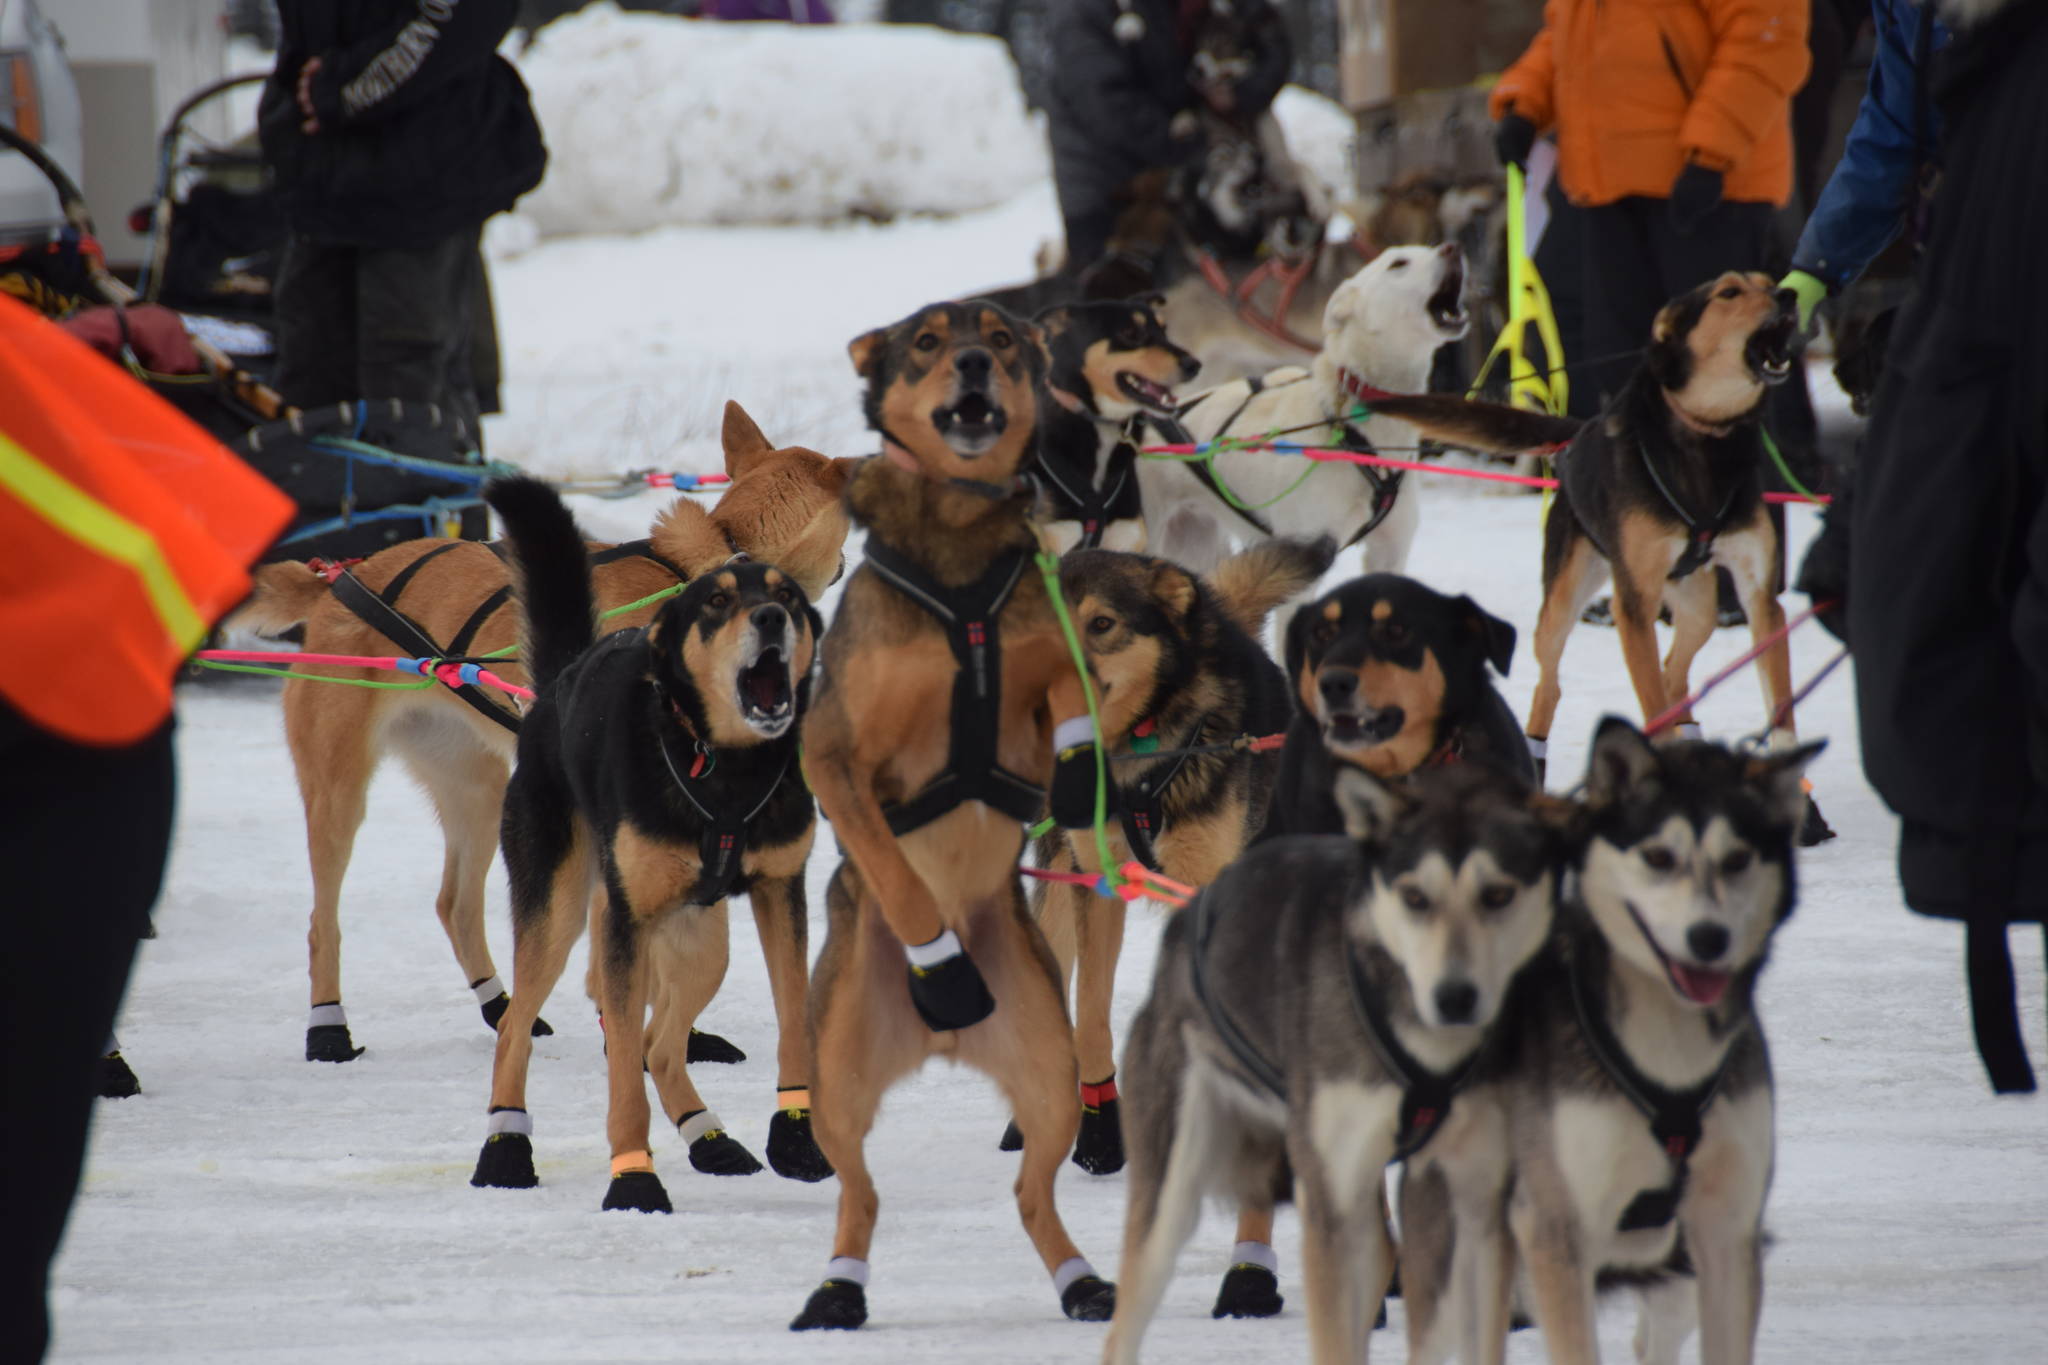 2020 Tustumena 200 sled dog race cancelled